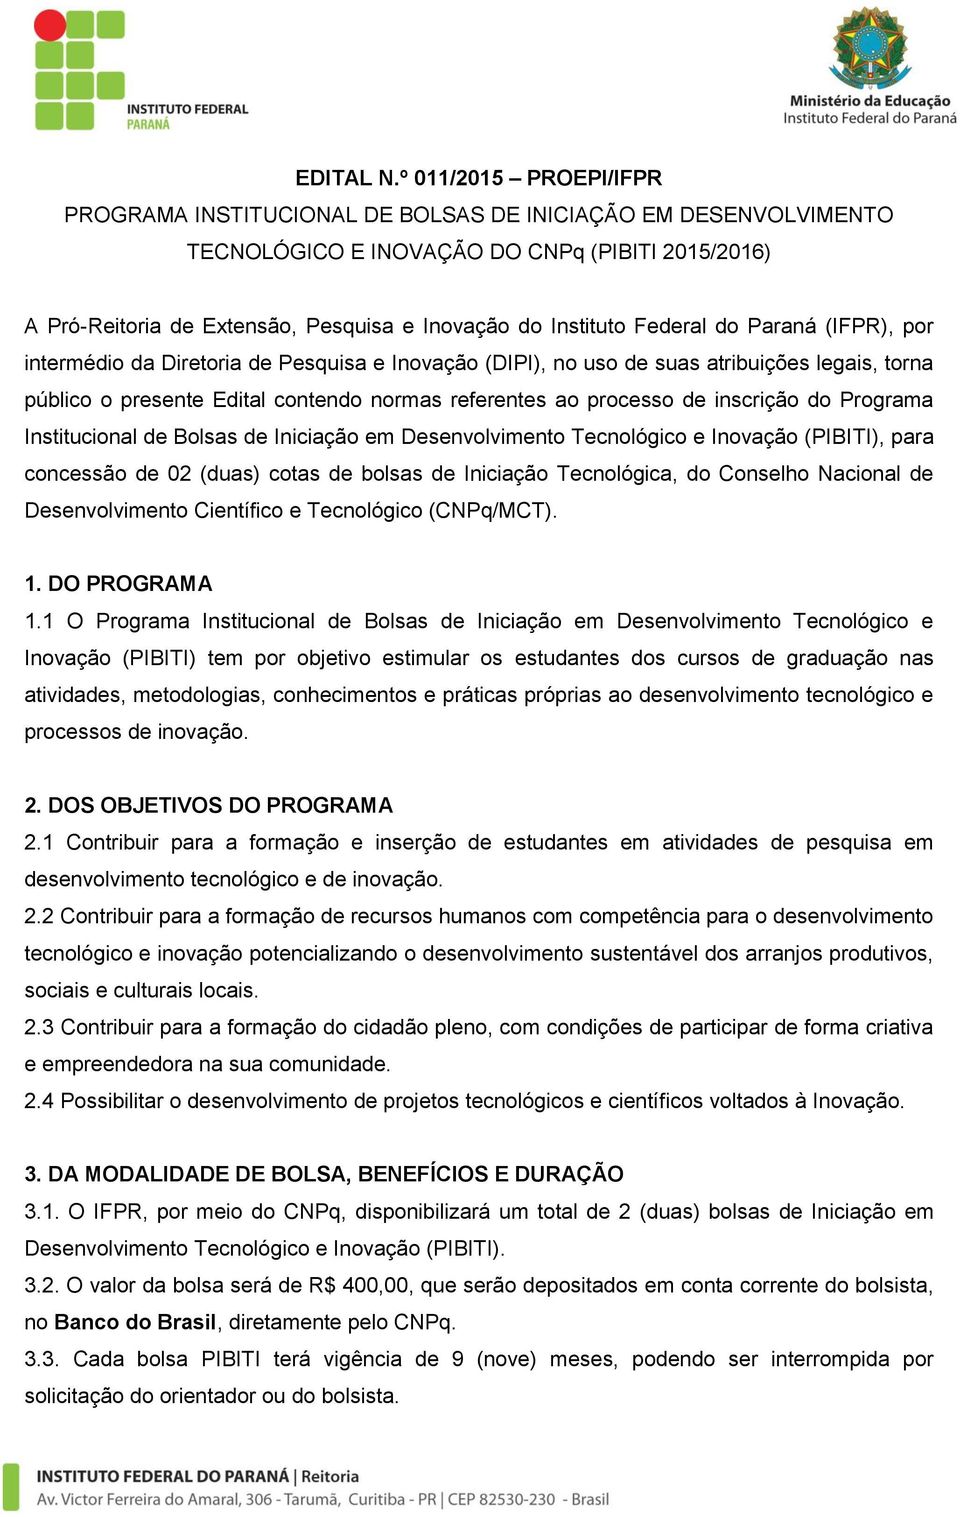 Federal do Paraná (IFPR), por intermédio da Diretoria de Pesquisa e Inovação (DIPI), no uso de suas atribuições legais, torna público o presente Edital contendo normas referentes ao processo de